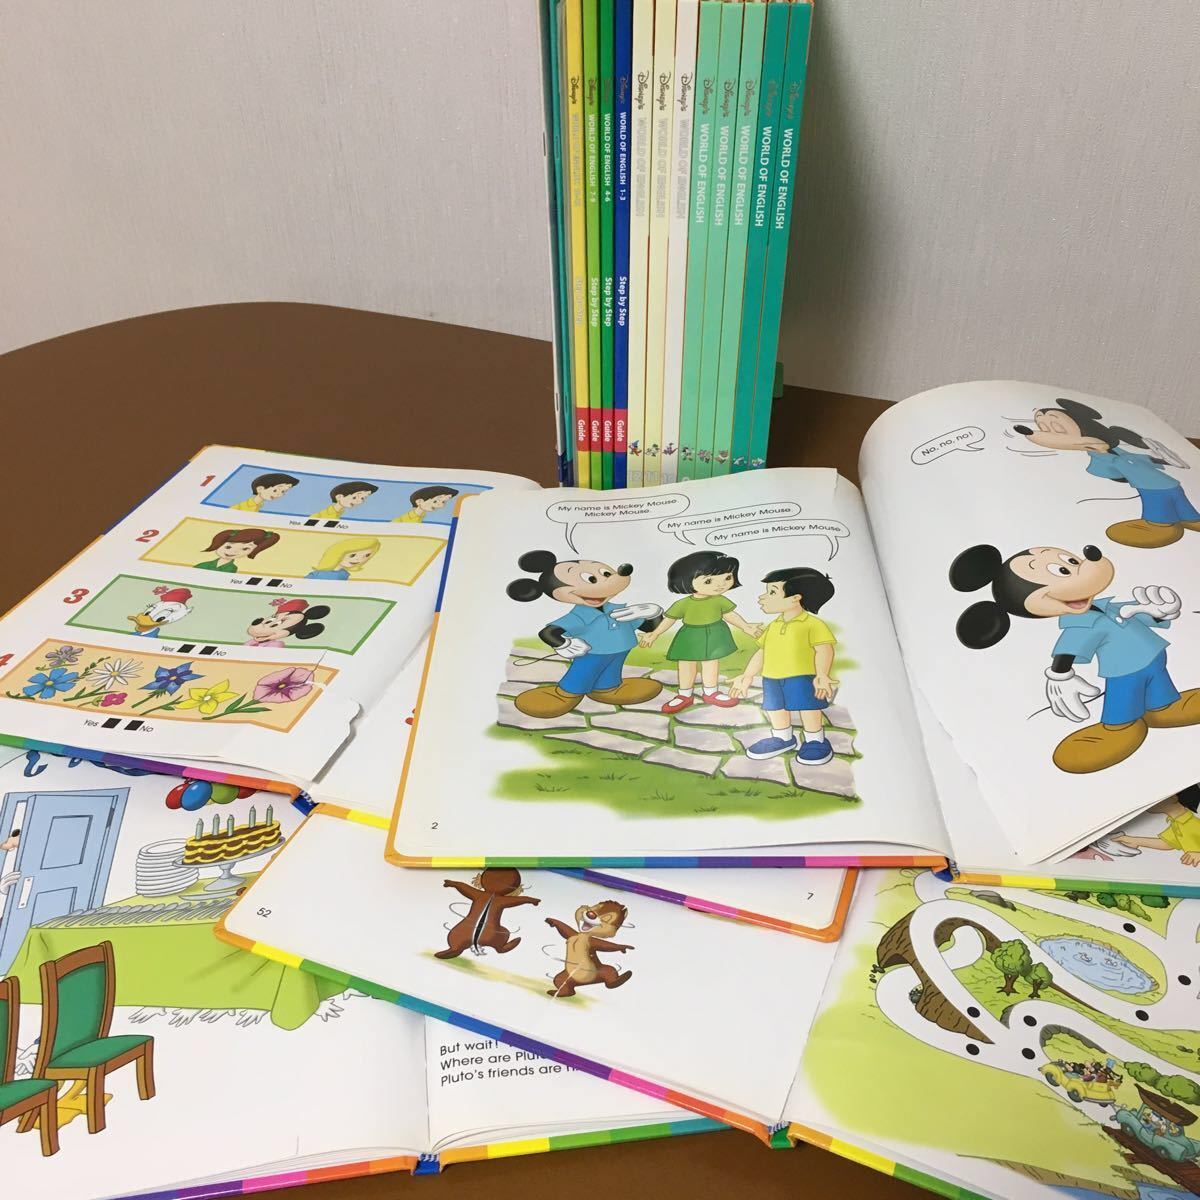 2016年購入　メインプログラム　ディズニー英語システム　DWE　ワールドファミリー　Disney　幼児教材　901801